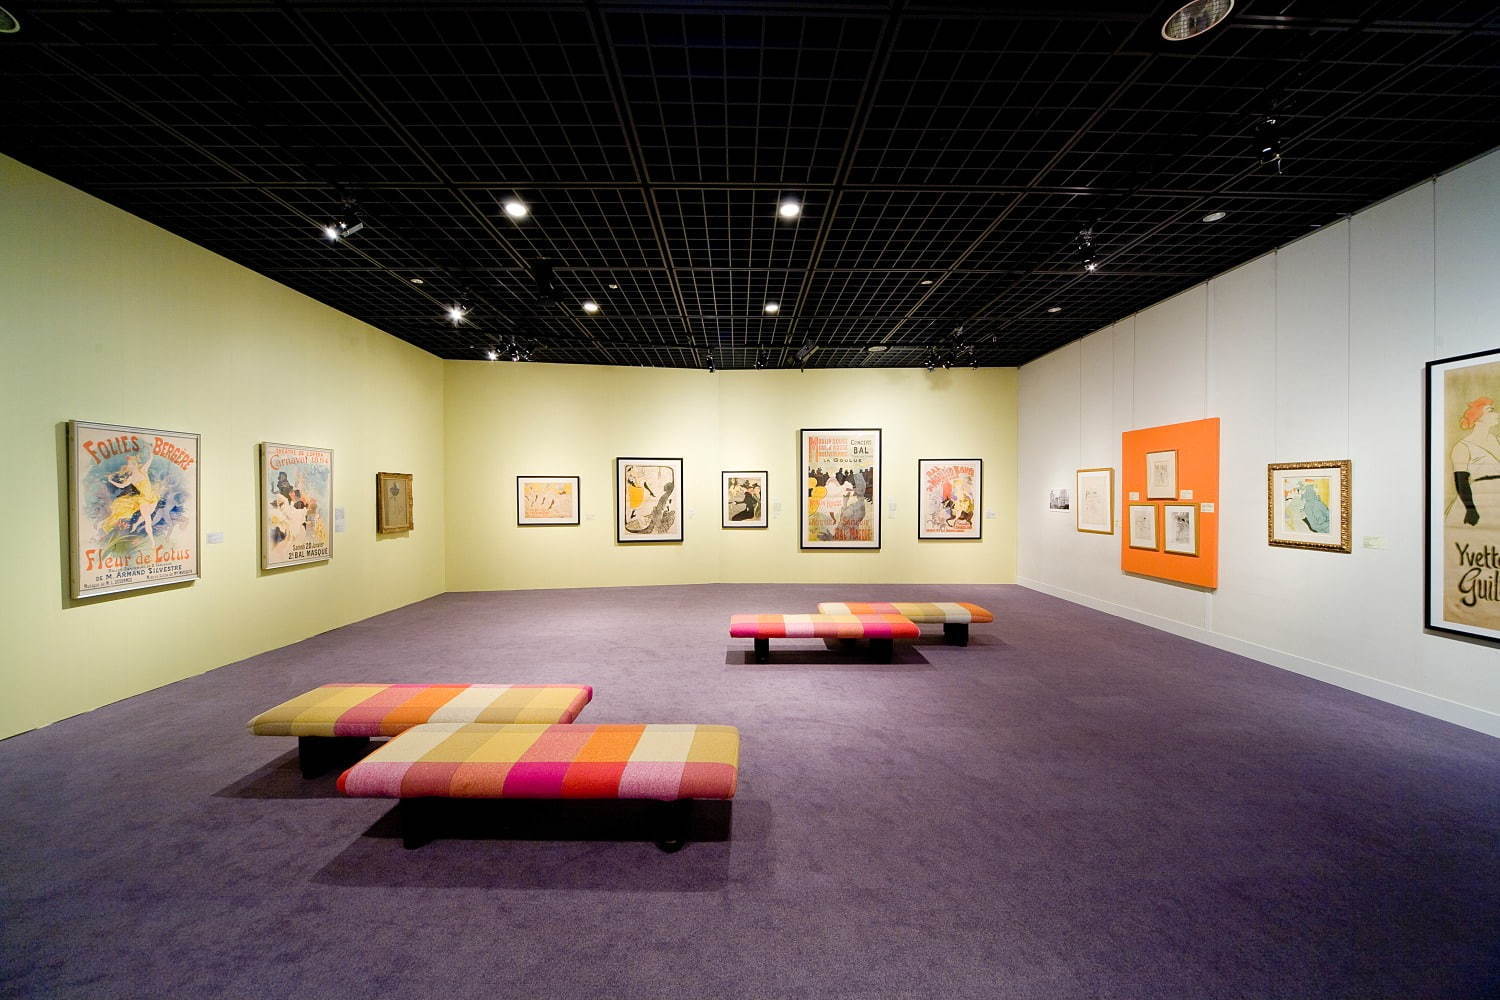 Bunkamura ザ・ミュージアム
「ロートレック・コネクション 愛すべき画家をめぐる物語」(2009年)